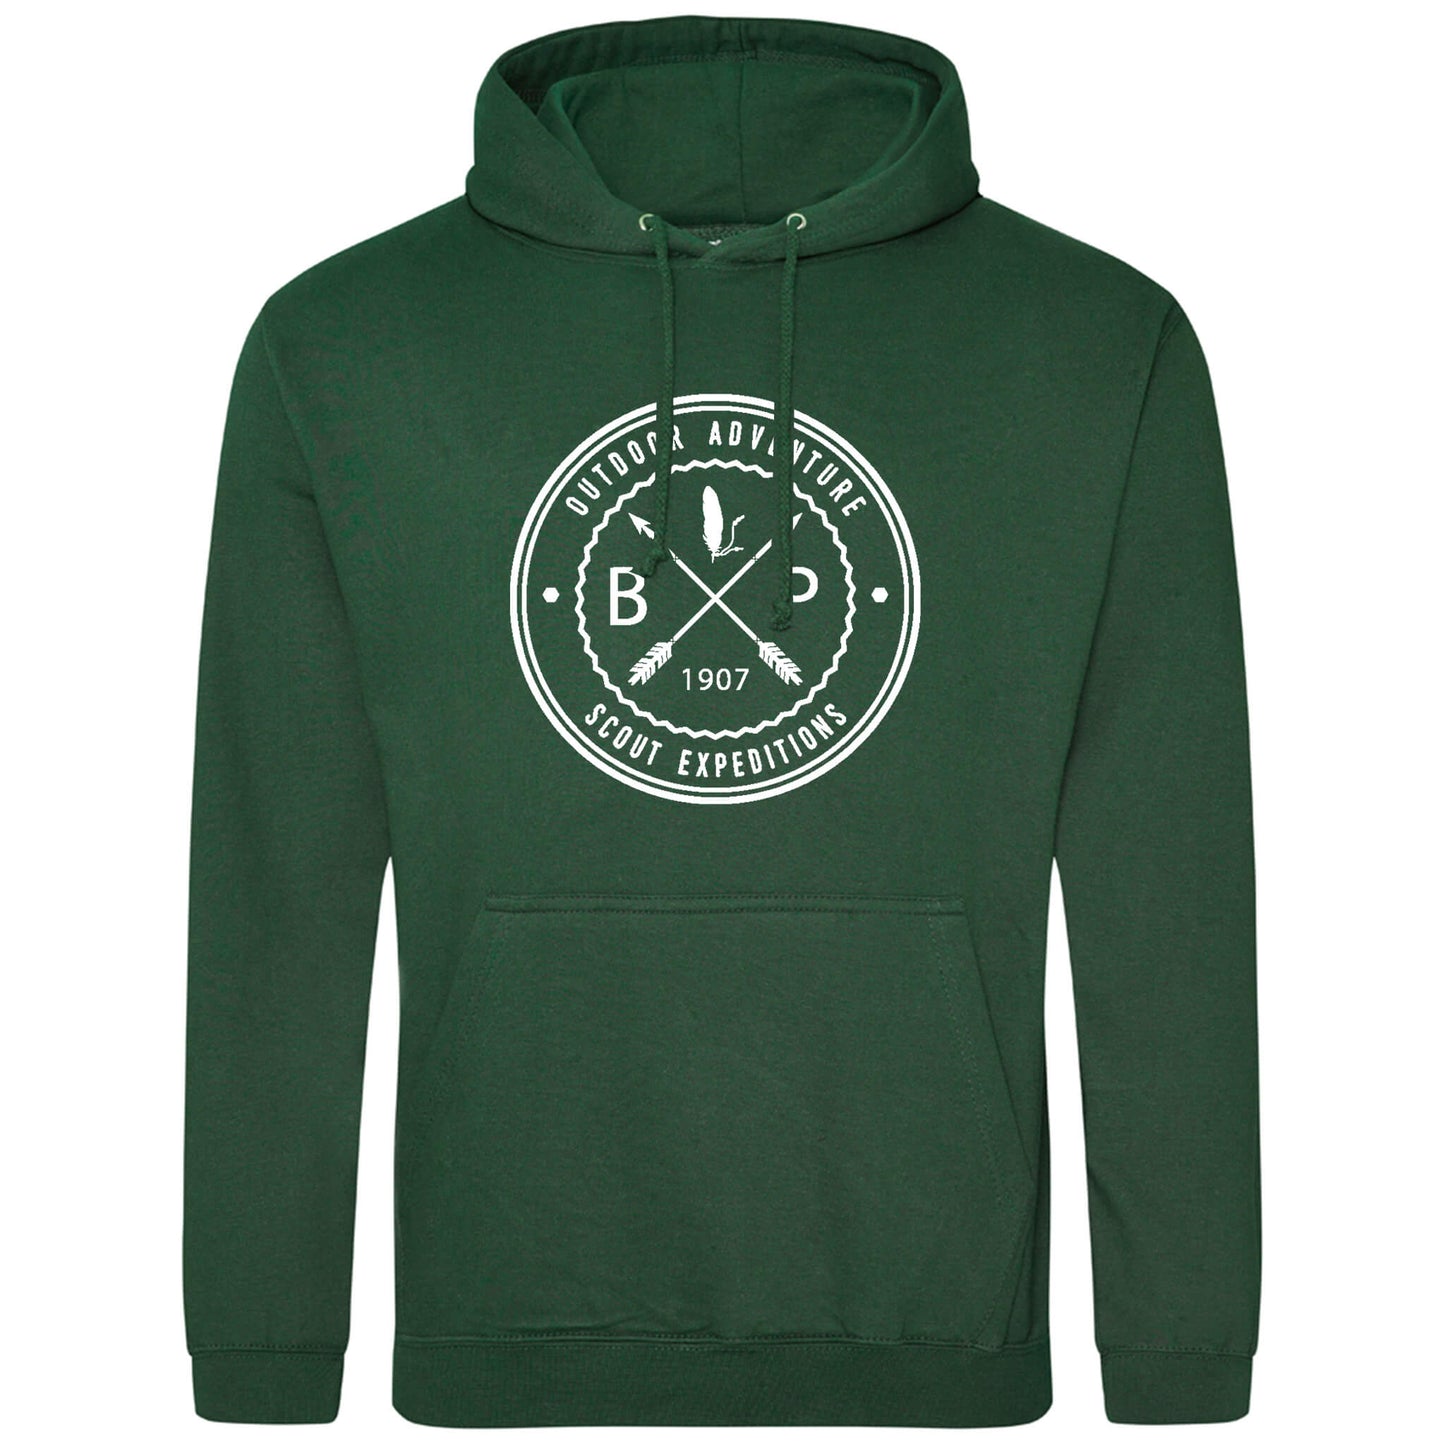 BP since 1907 hoodie green